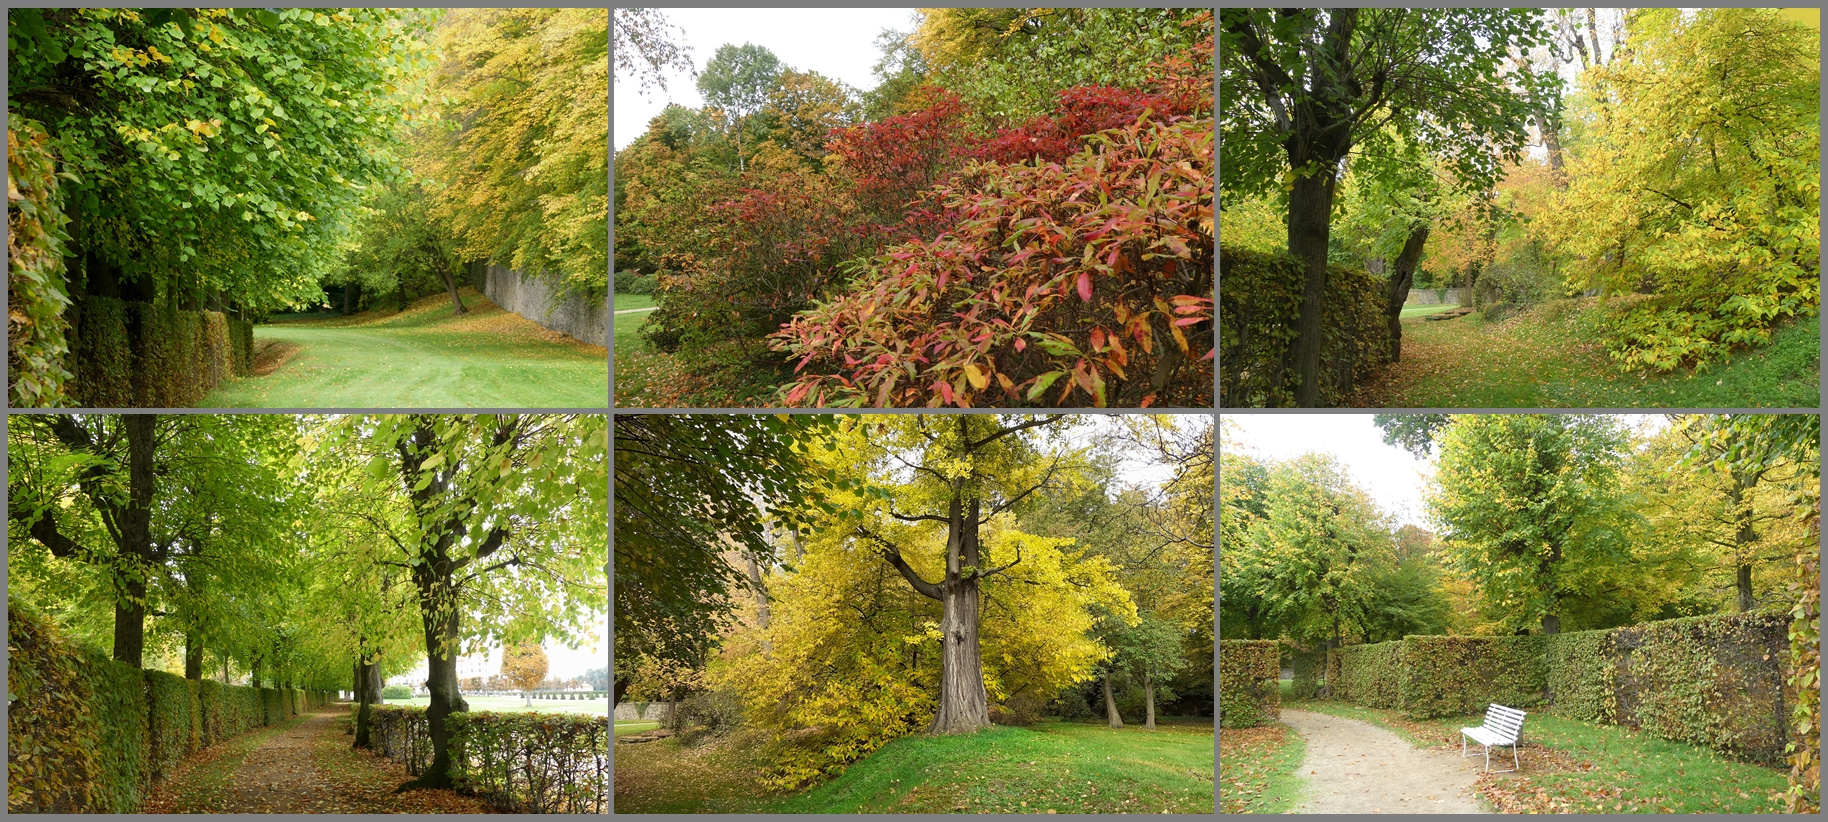 Herbst im Park von Moritzburg